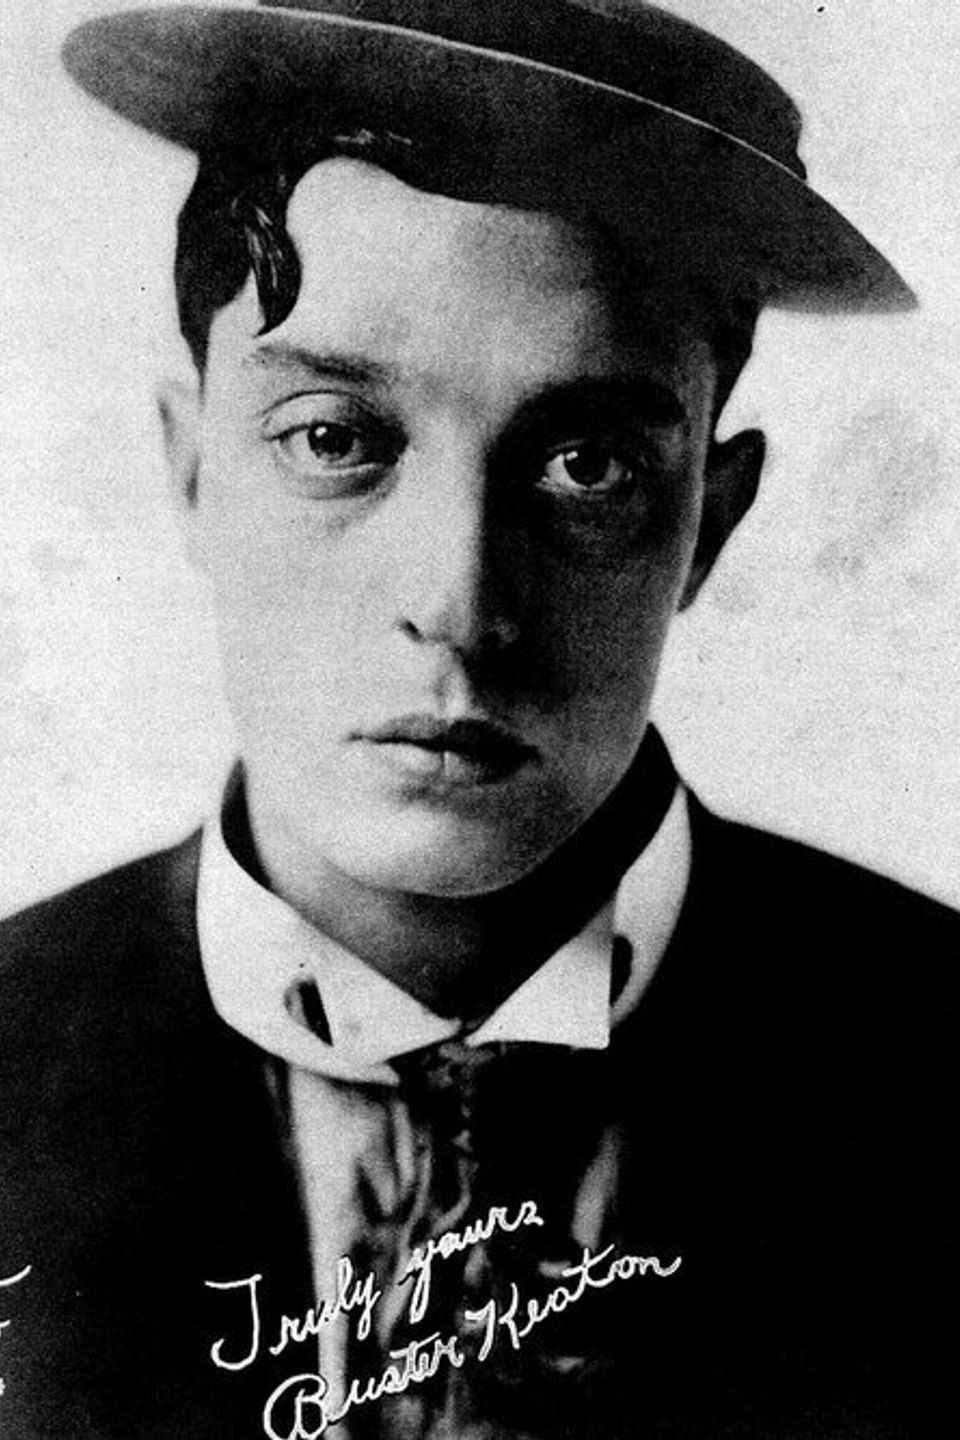 Buster Keaton - Festival on Wheels